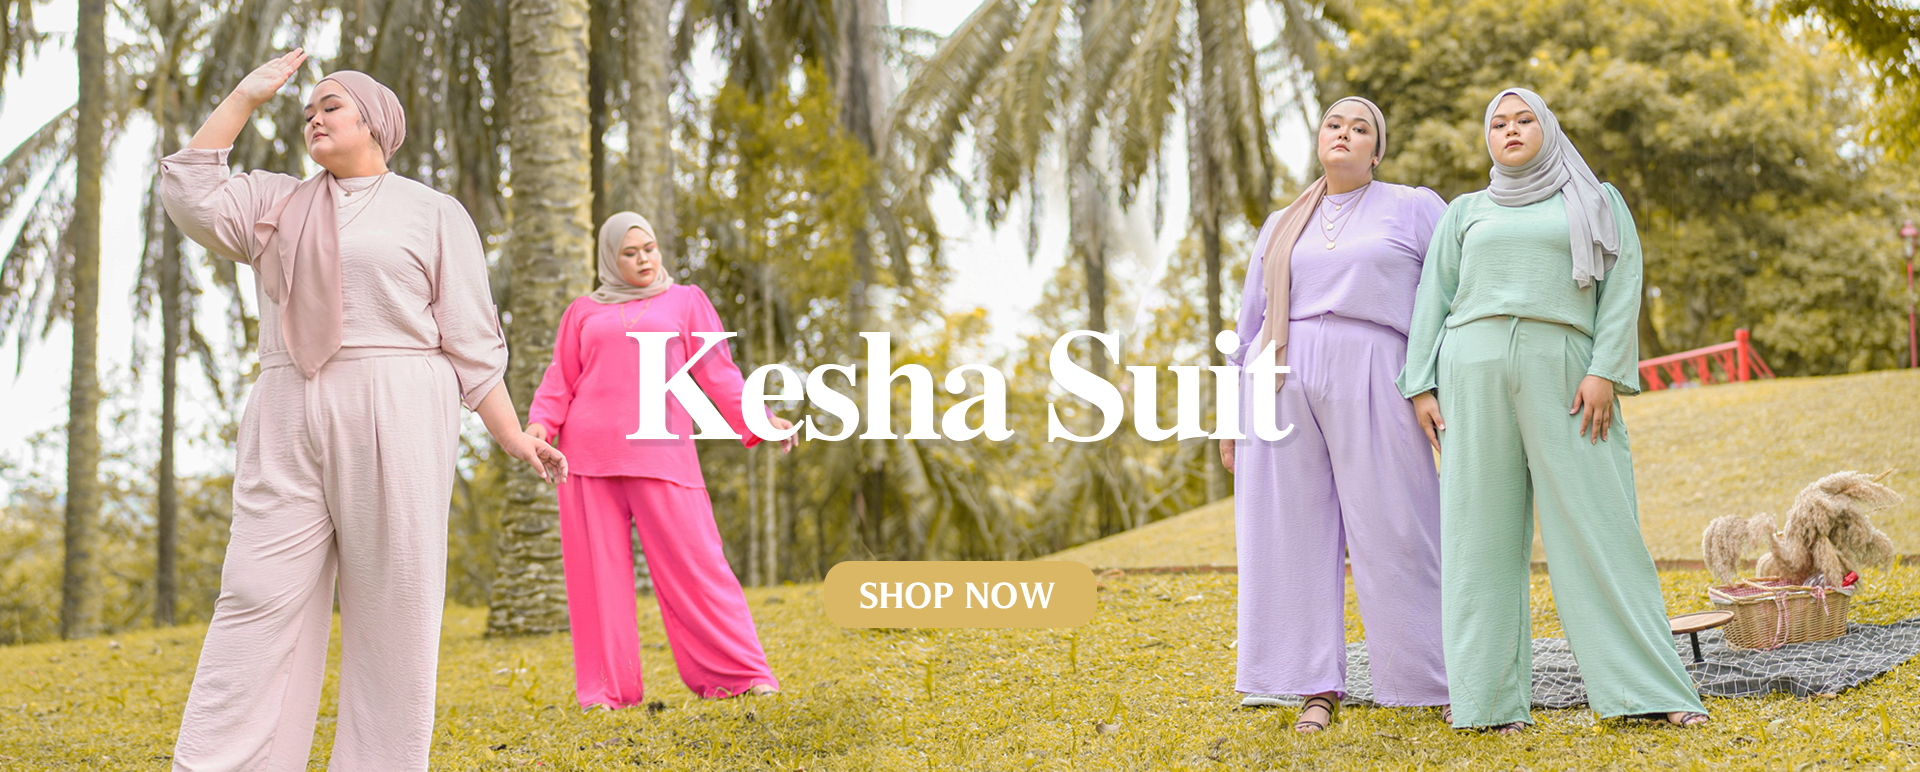 Kesha Suit